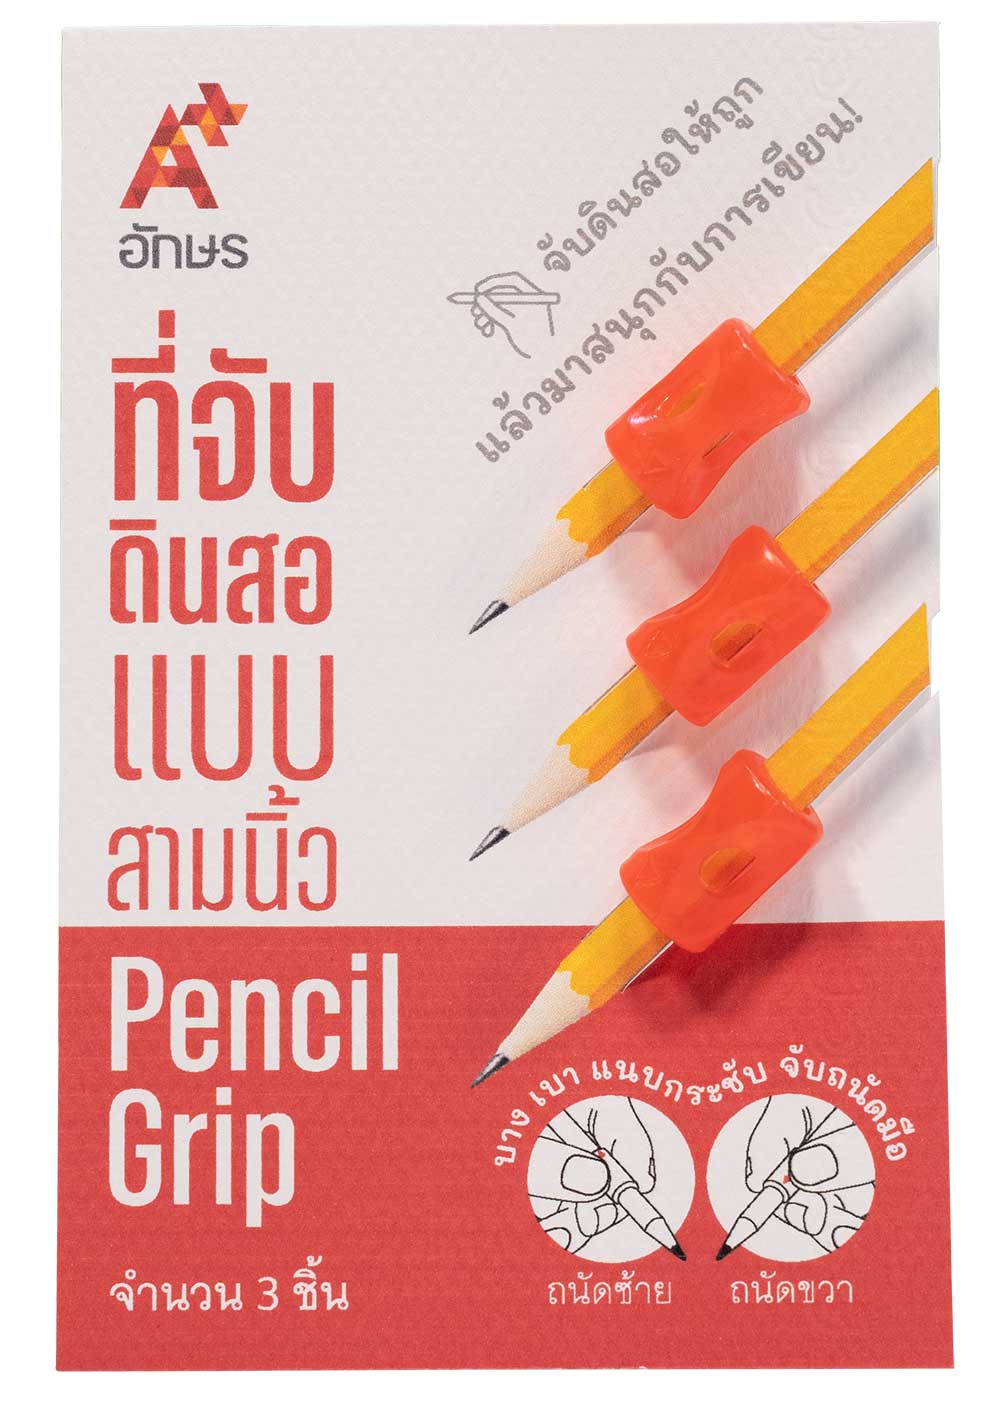 ที่จับดินสอแบบสามนิ้ว Pencil grip